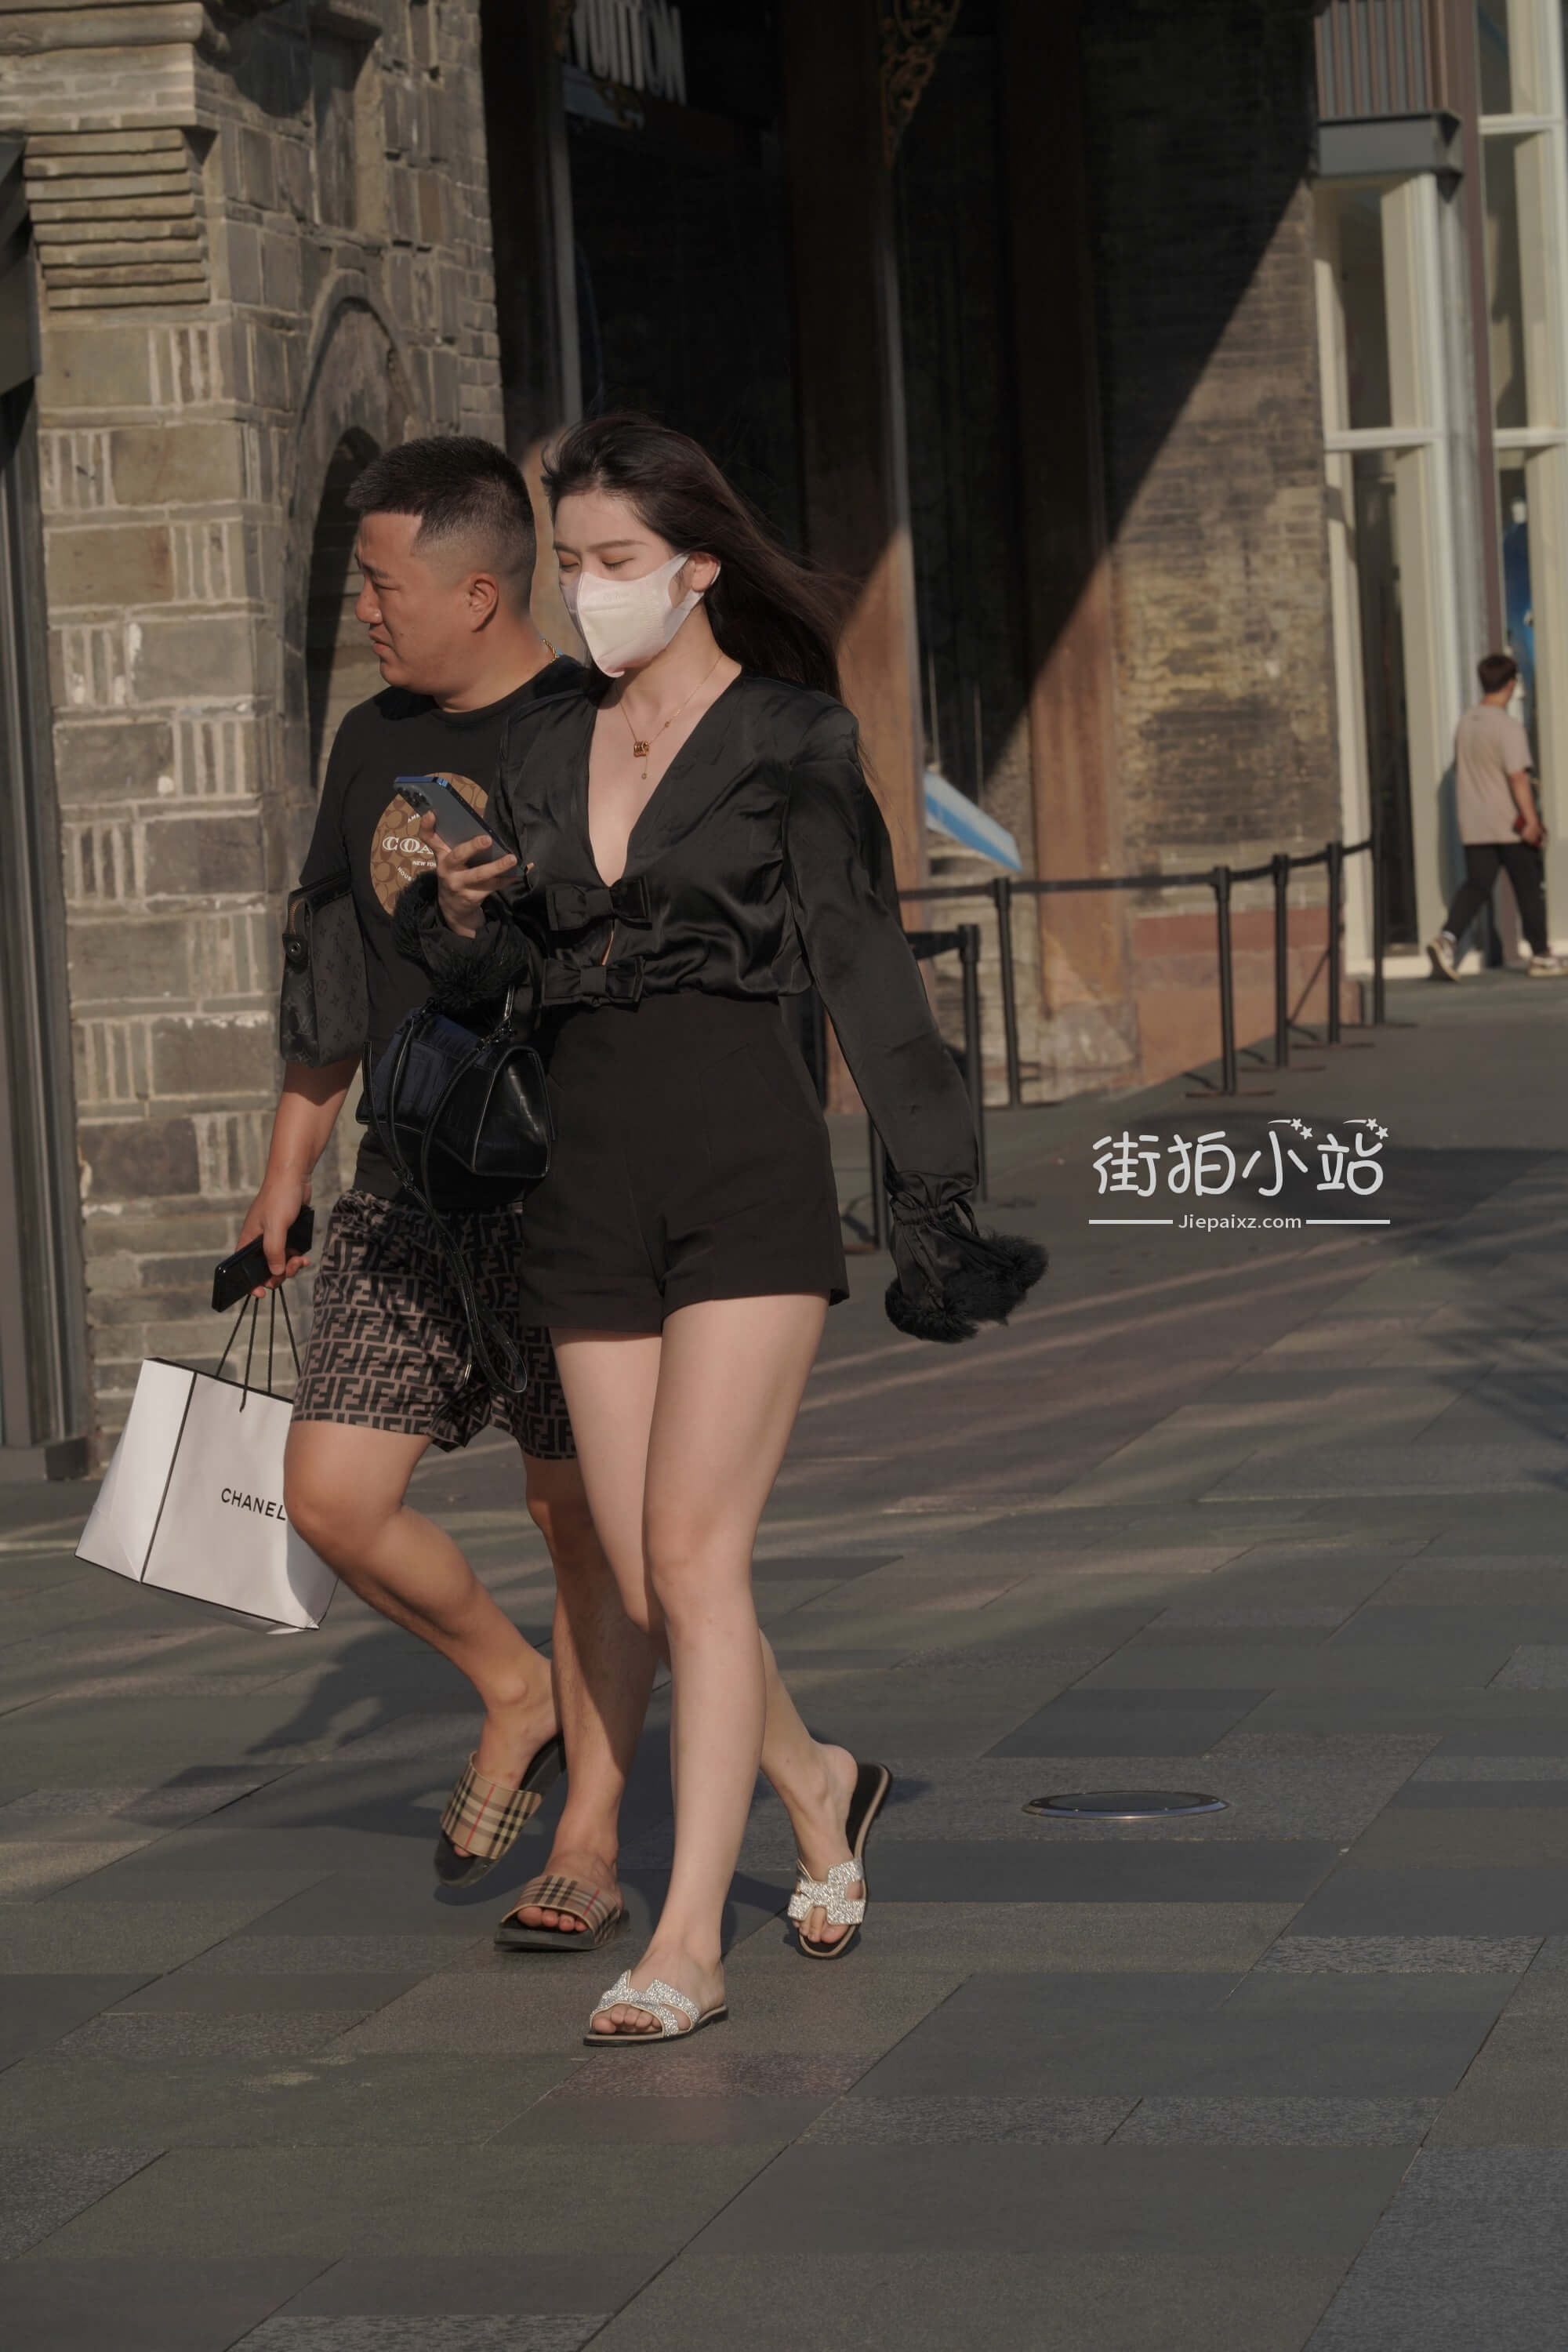 长腿美女简晓育(2)[55P]|MM 写真 - 武当休闲山庄 - 稳定,和谐,人性化的中文社区